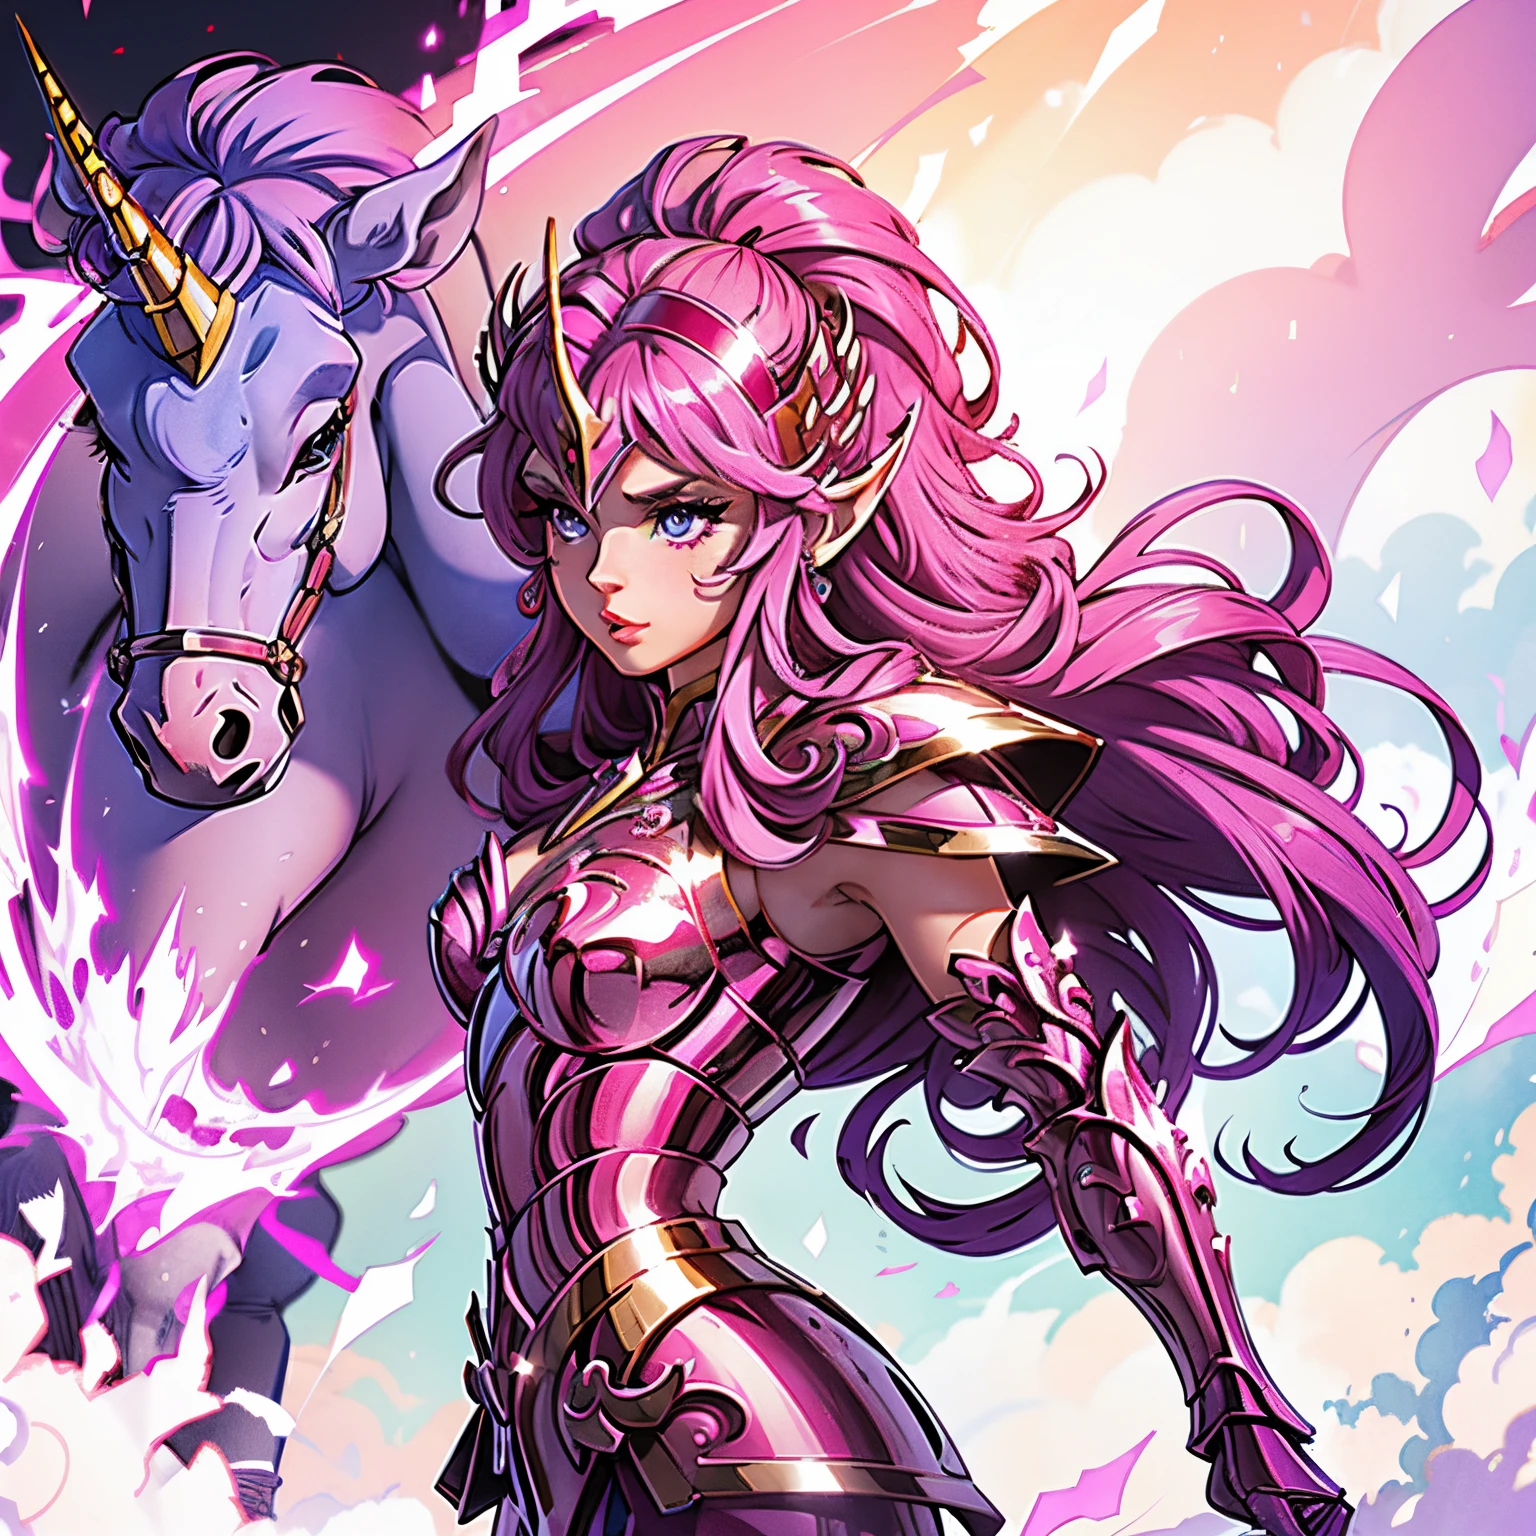 身穿粉色独角兽盔甲的女人,, 圣斗士, 粉色独角兽盔甲, , 独角兽头盔, 深色和紫色的头发, 长发, , 魅力人物, 第二人生头像, 不错的截图, 妖娆的女人, 高质量, 非常细致的皮肤,